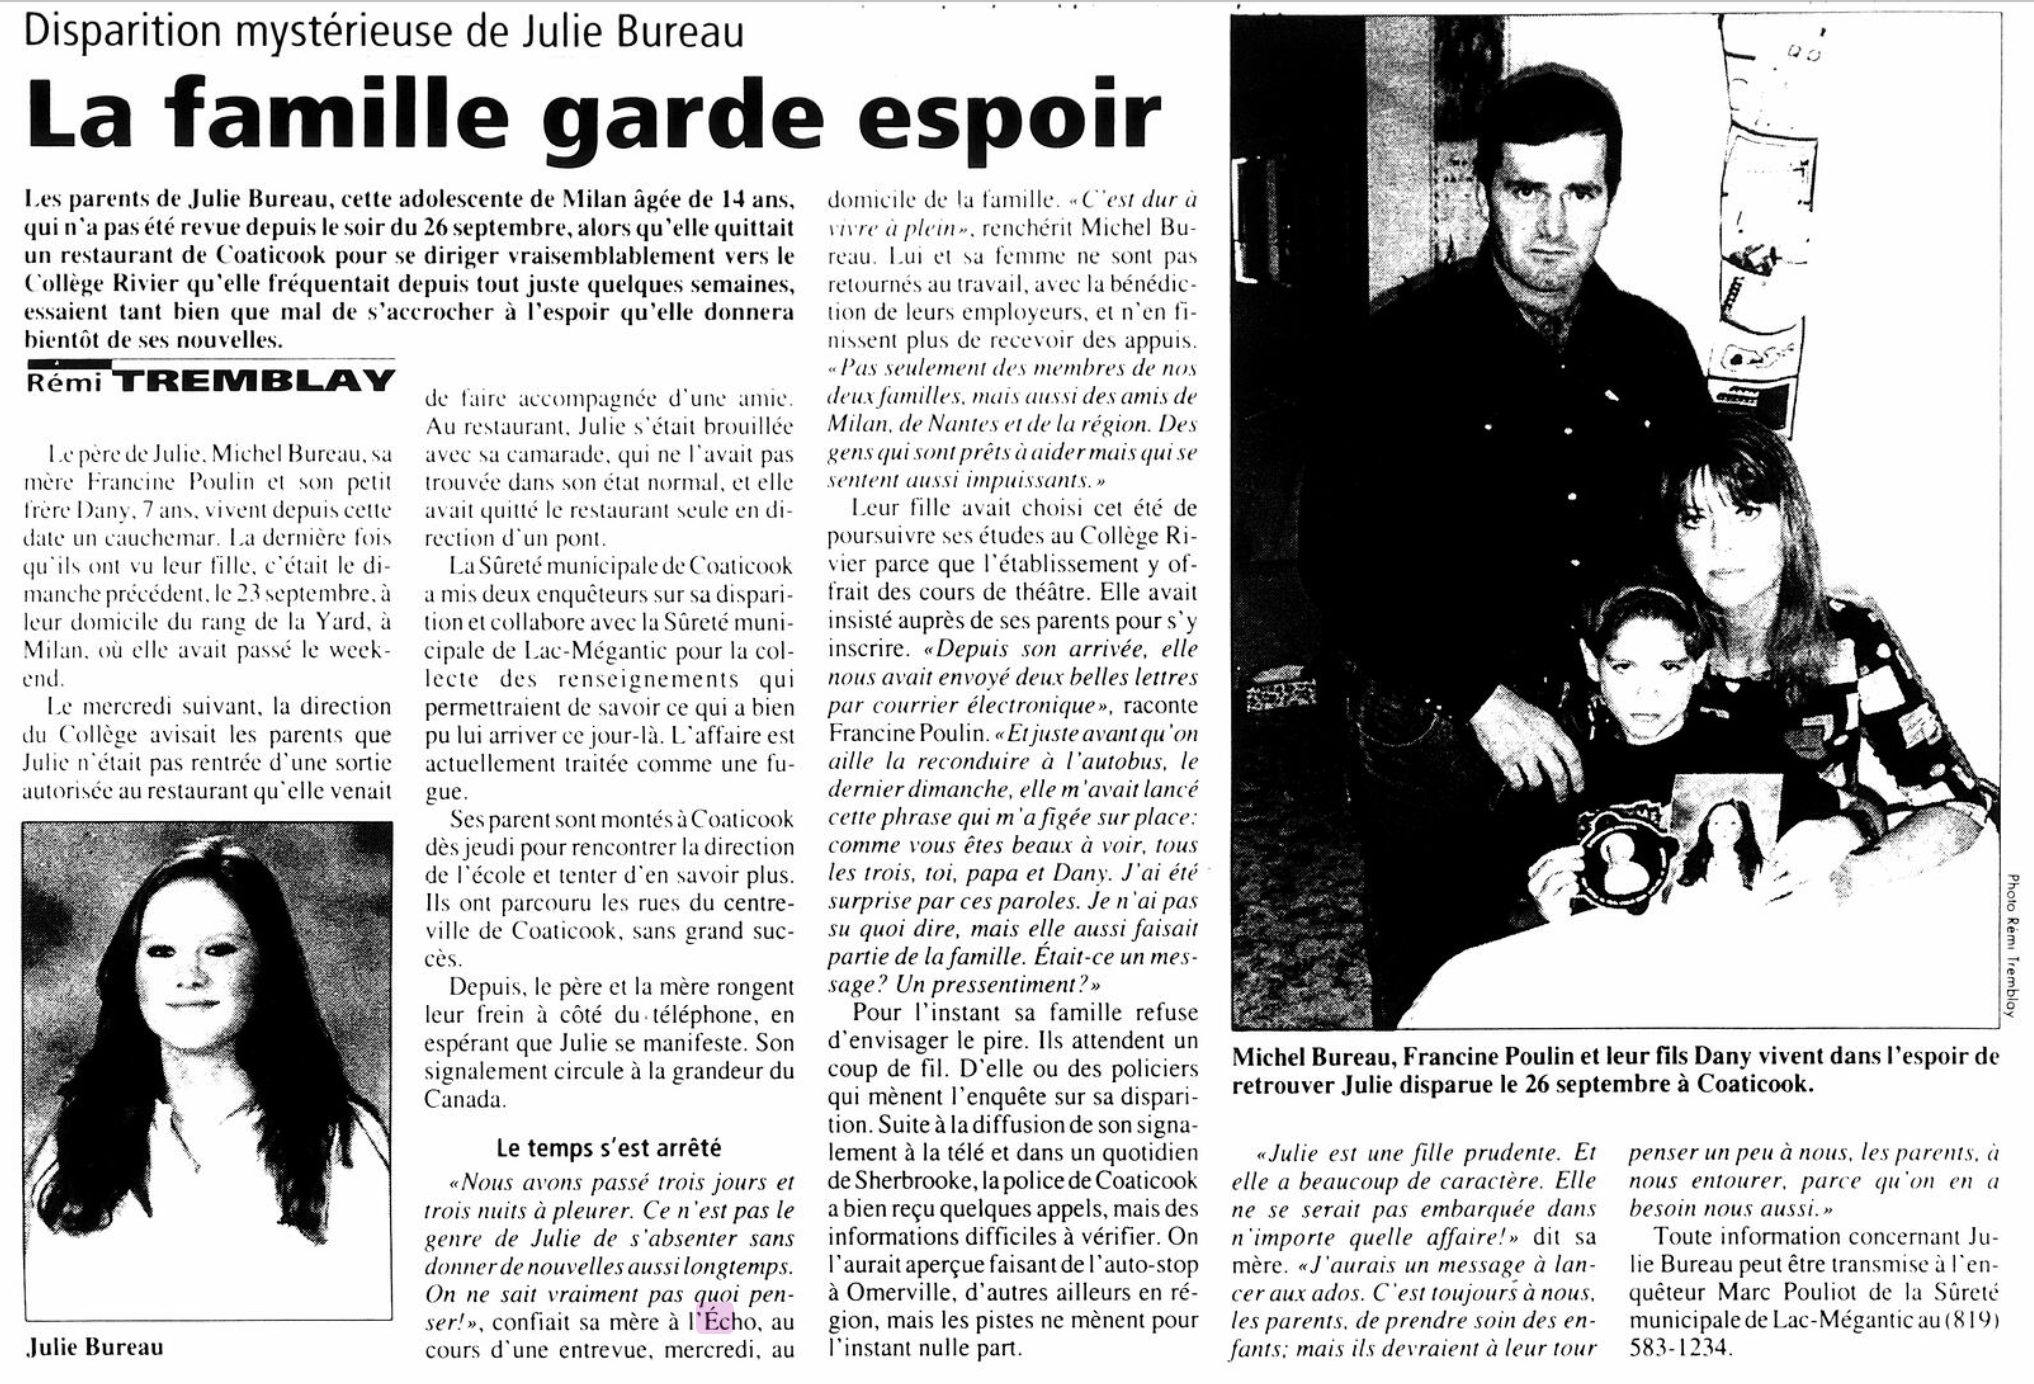  Journal L’écho de Frontenac, 7 octobre 2001 